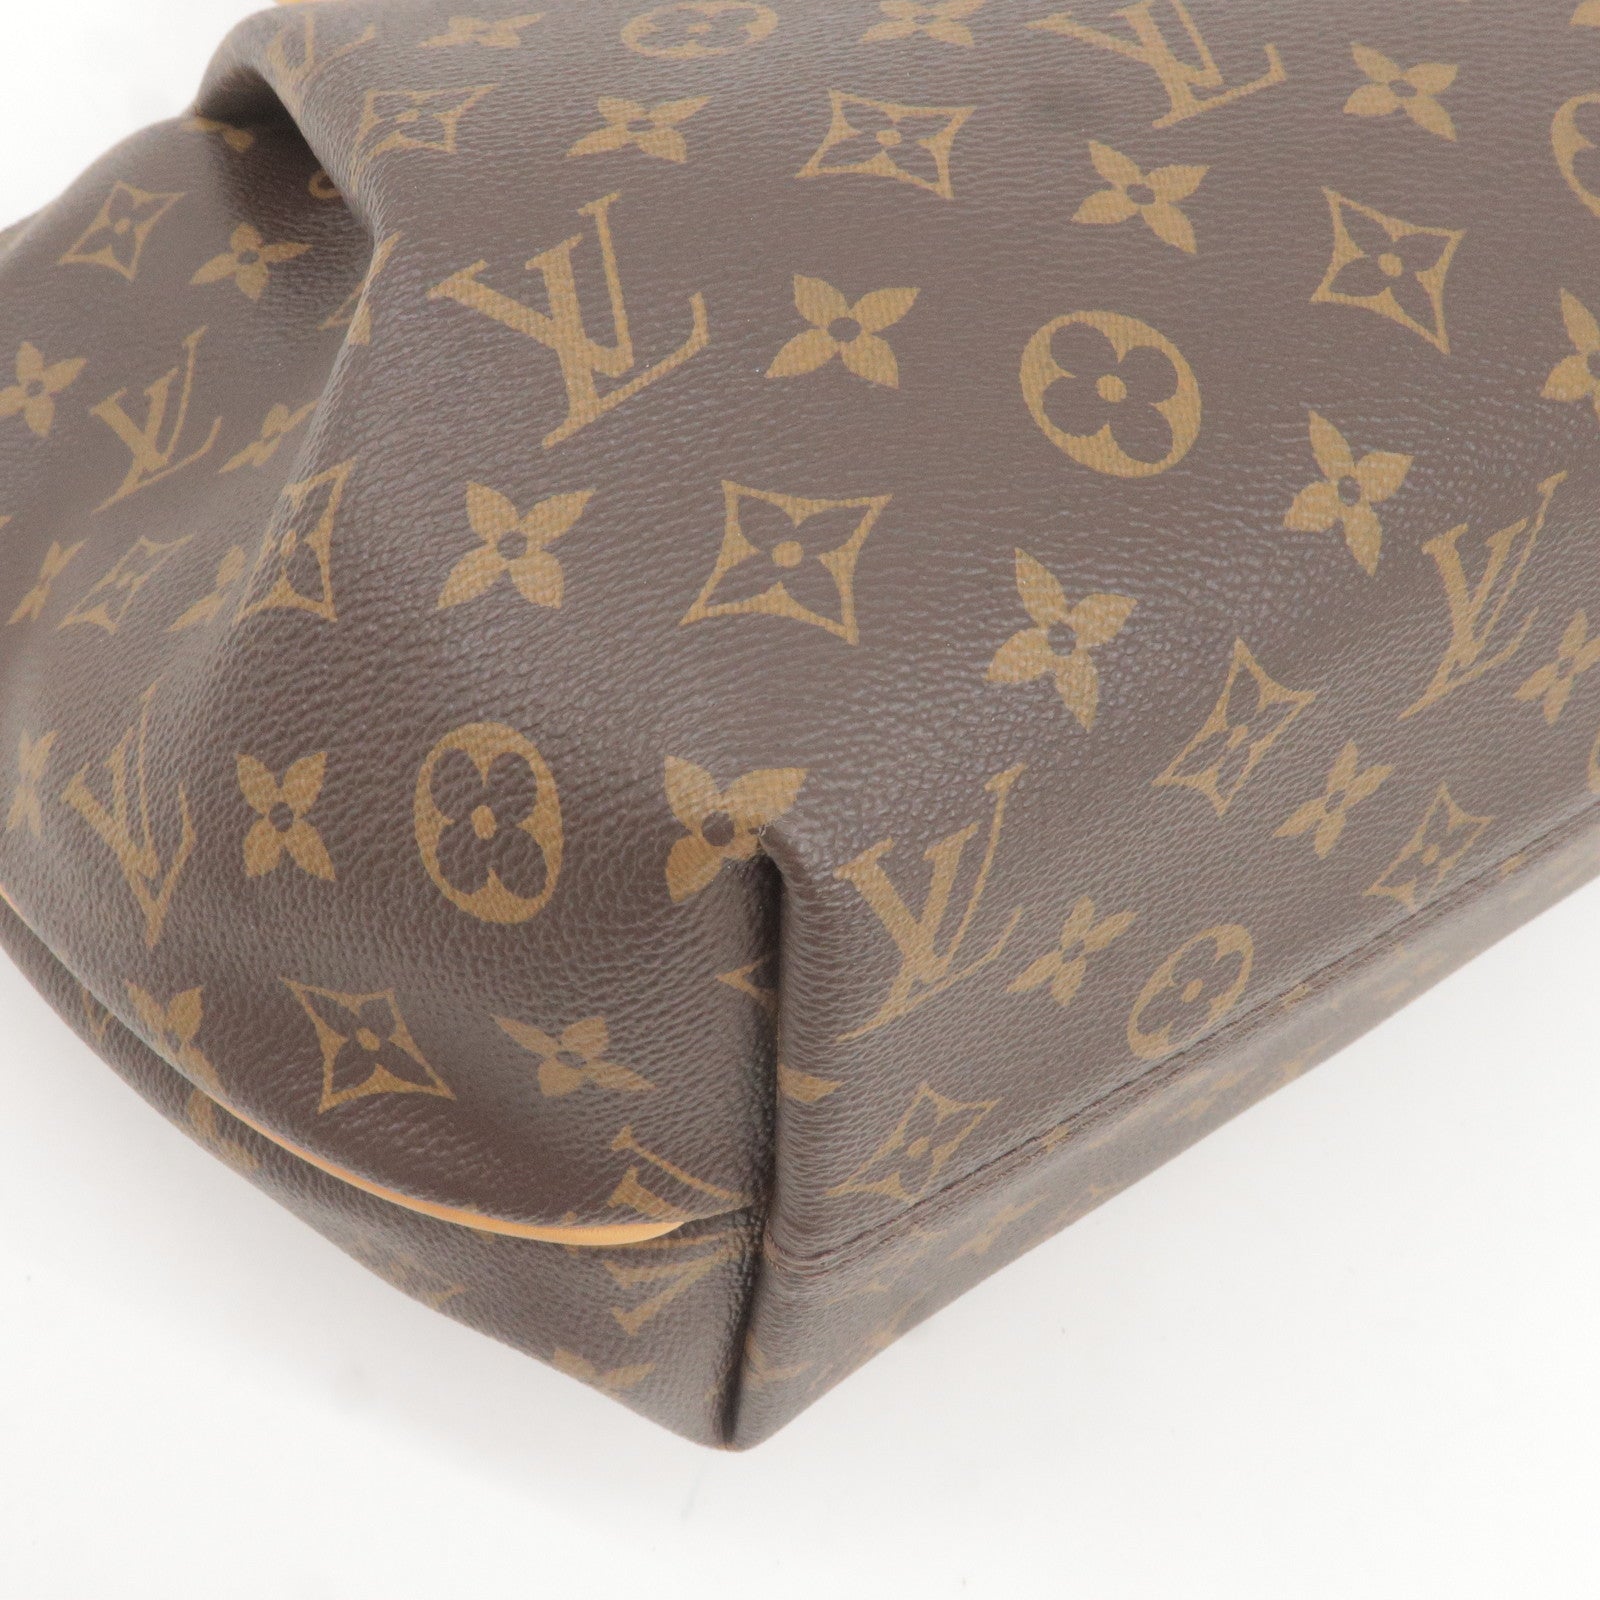 Bags, Cuir Glac Louis Vuitton Purse